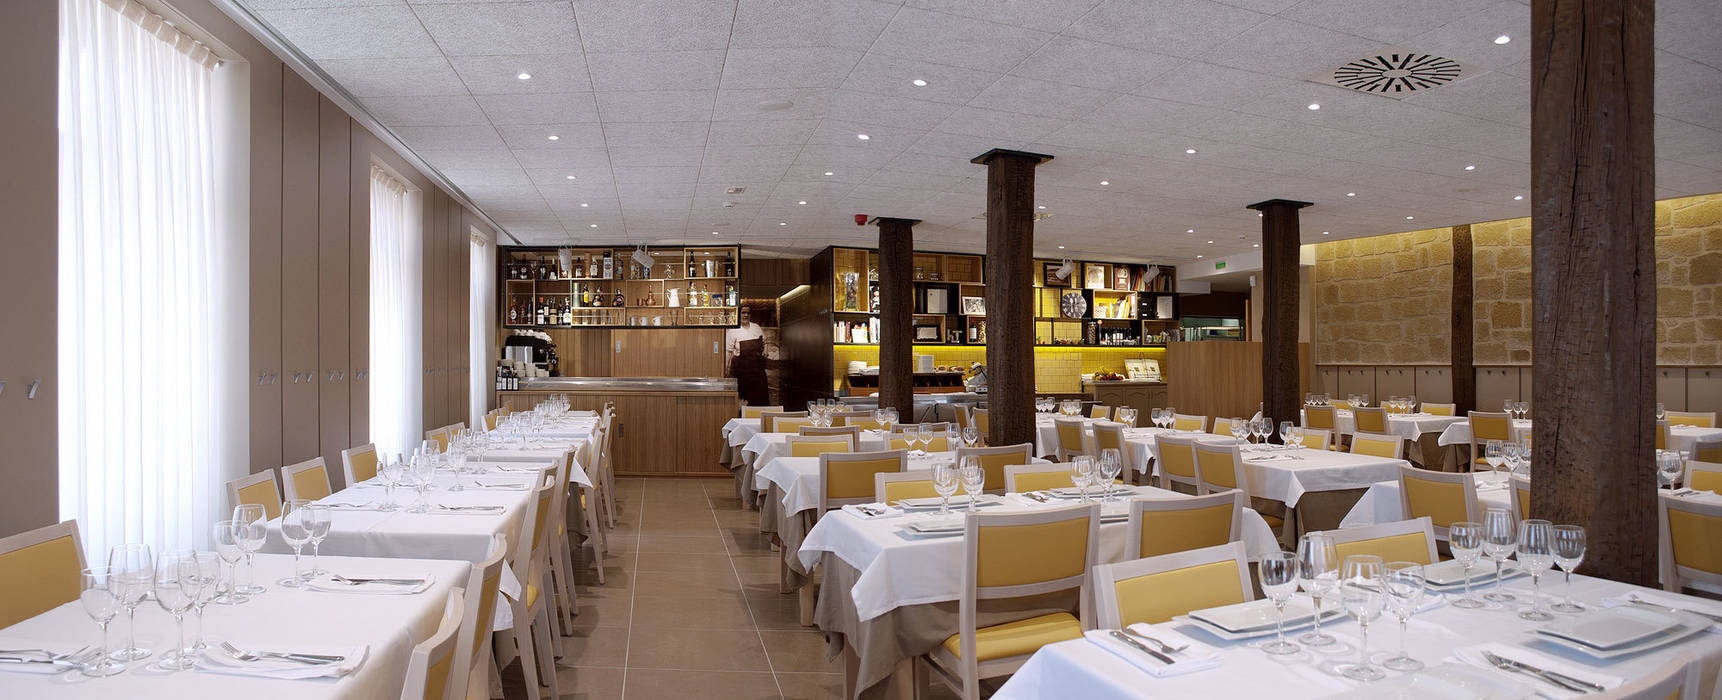 Restaurante La Vasca, interior03 interior03 Espacios comerciales Locales gastronómicos